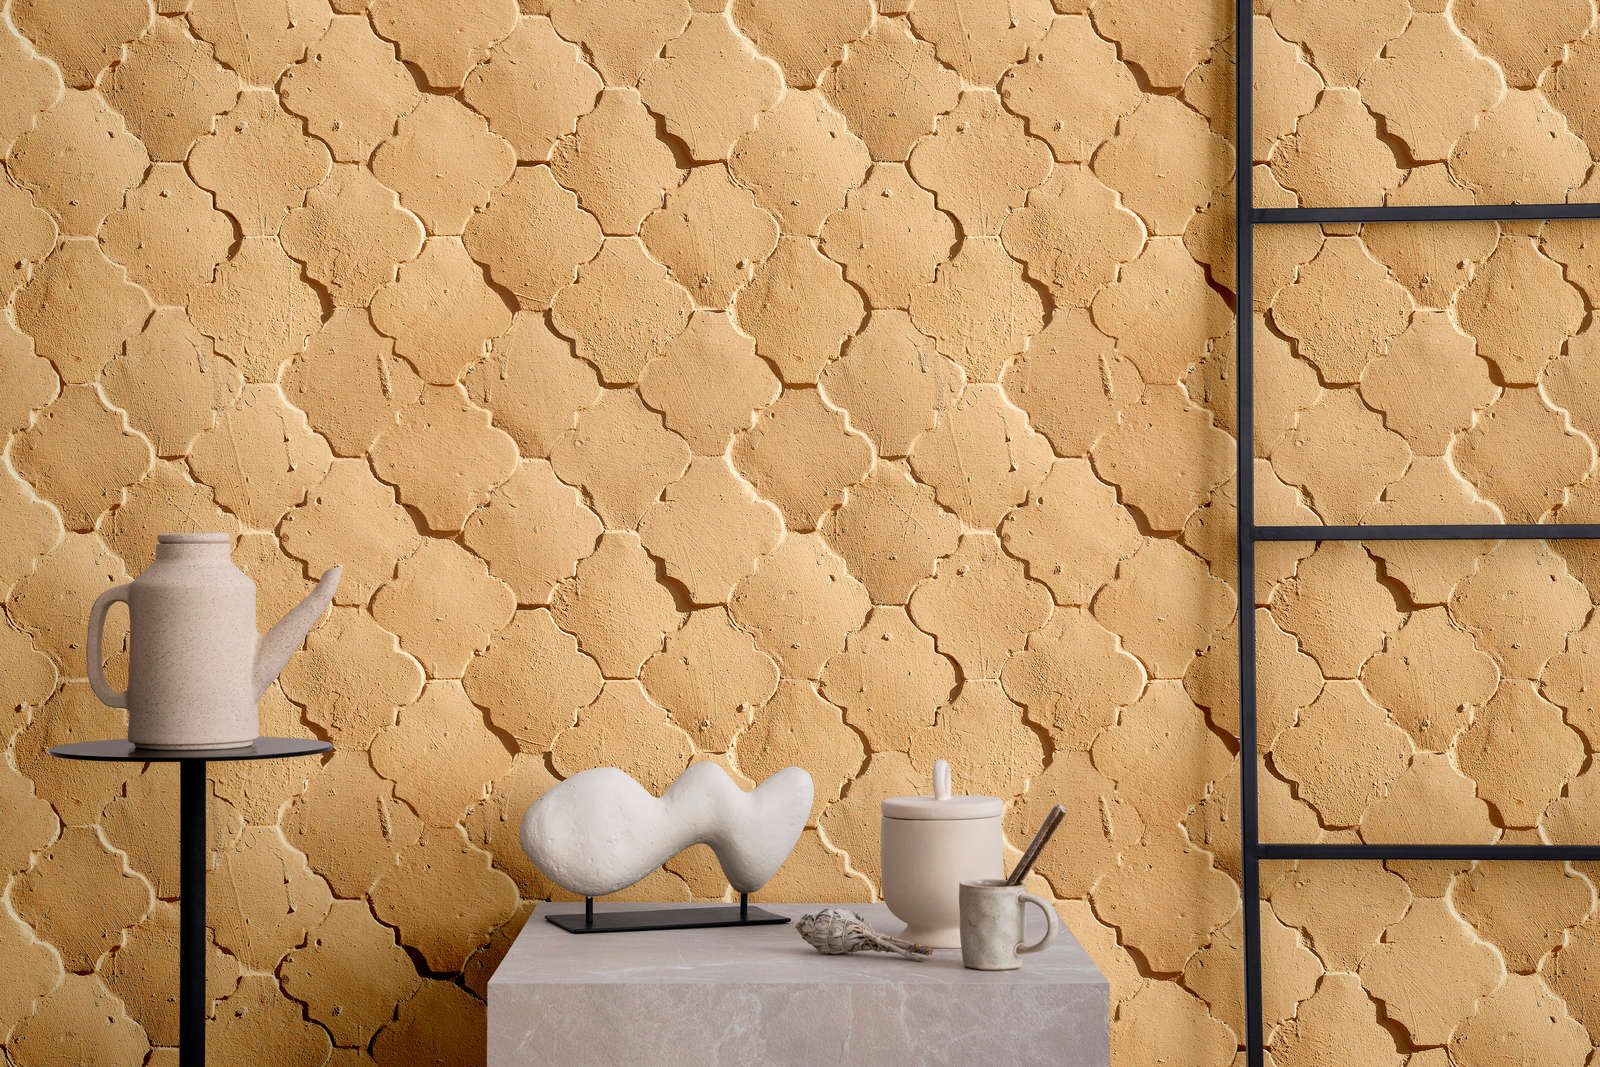             Fotomural »siena« - Diseño de azulejos mediterráneos en colores arena - Material no tejido de alta calidad, liso y ligeramente brillante
        